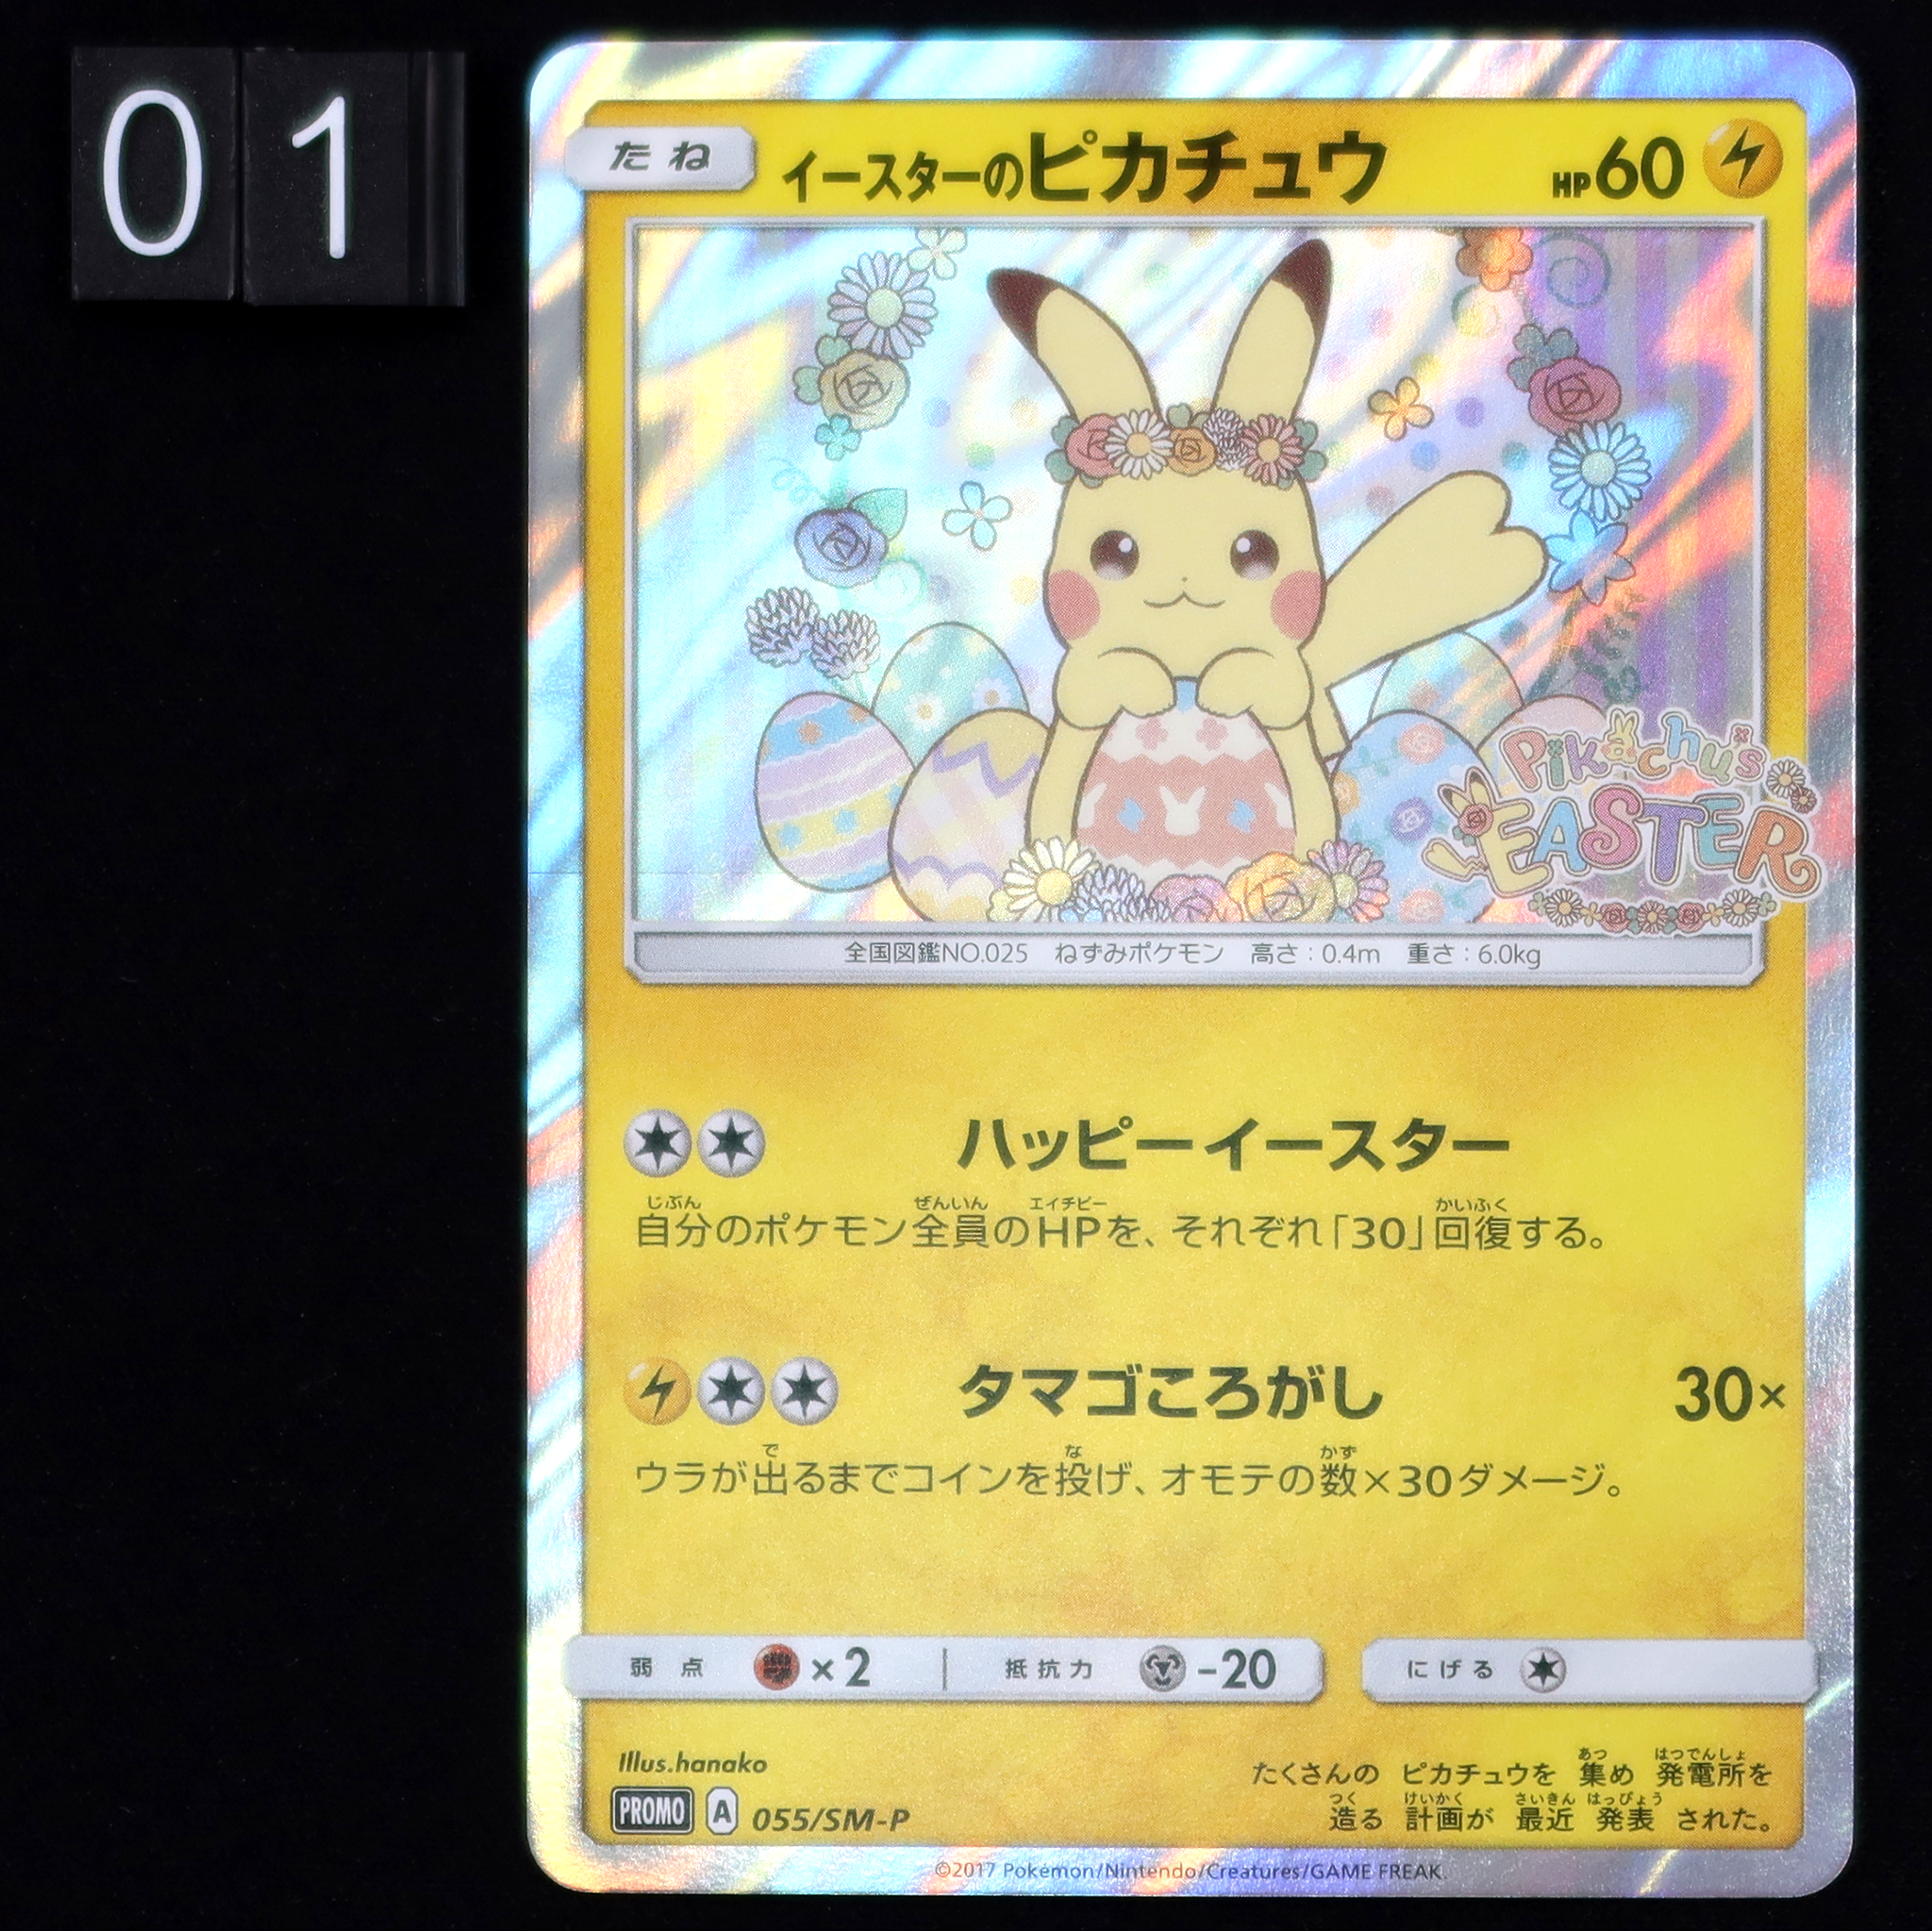 Pokémon Card Game PROMO 055/SM-P